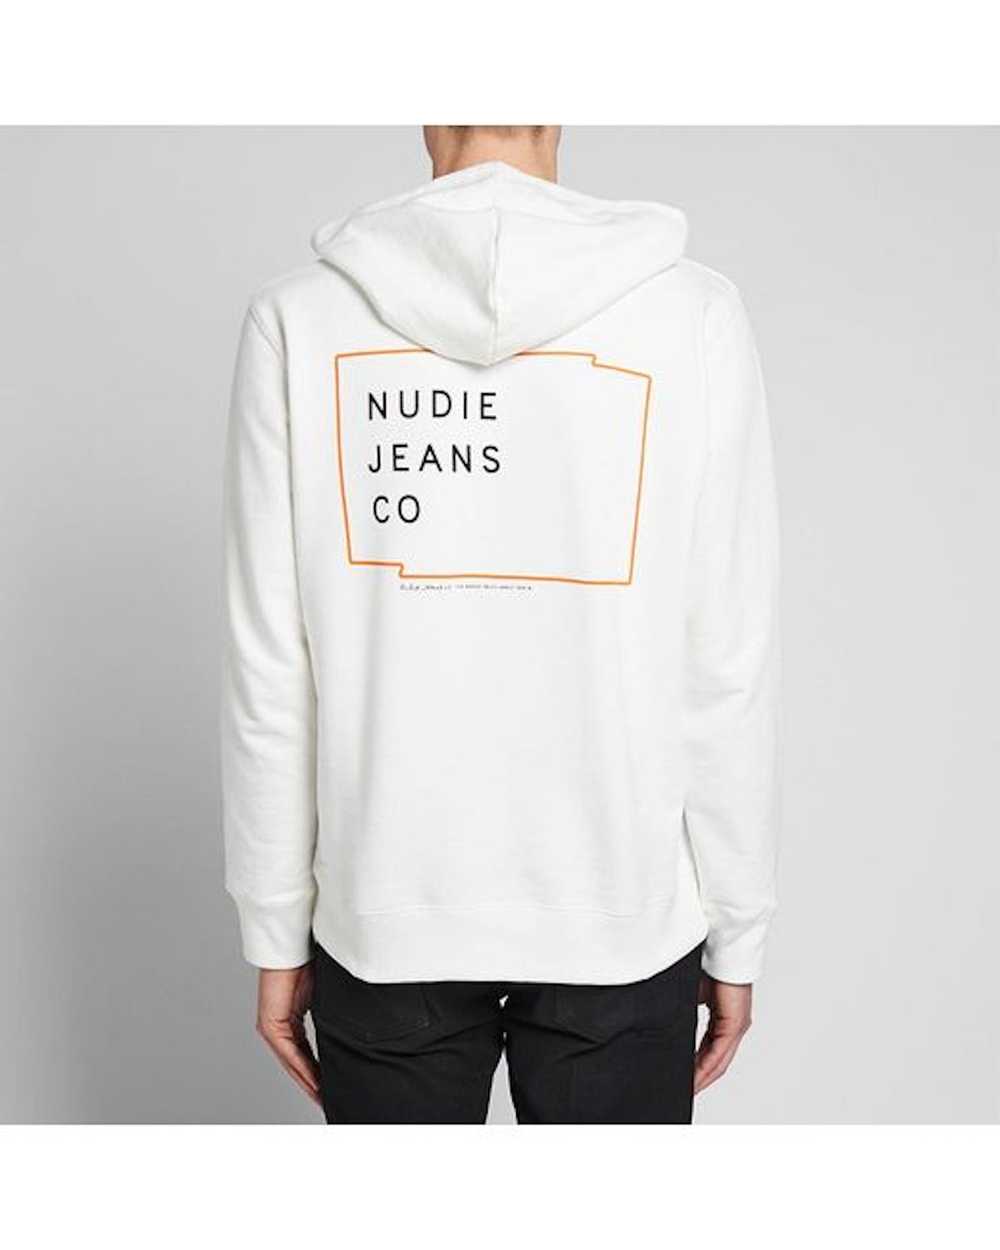 Nudie Jeans Nudie Jeans Hoodie - image 2